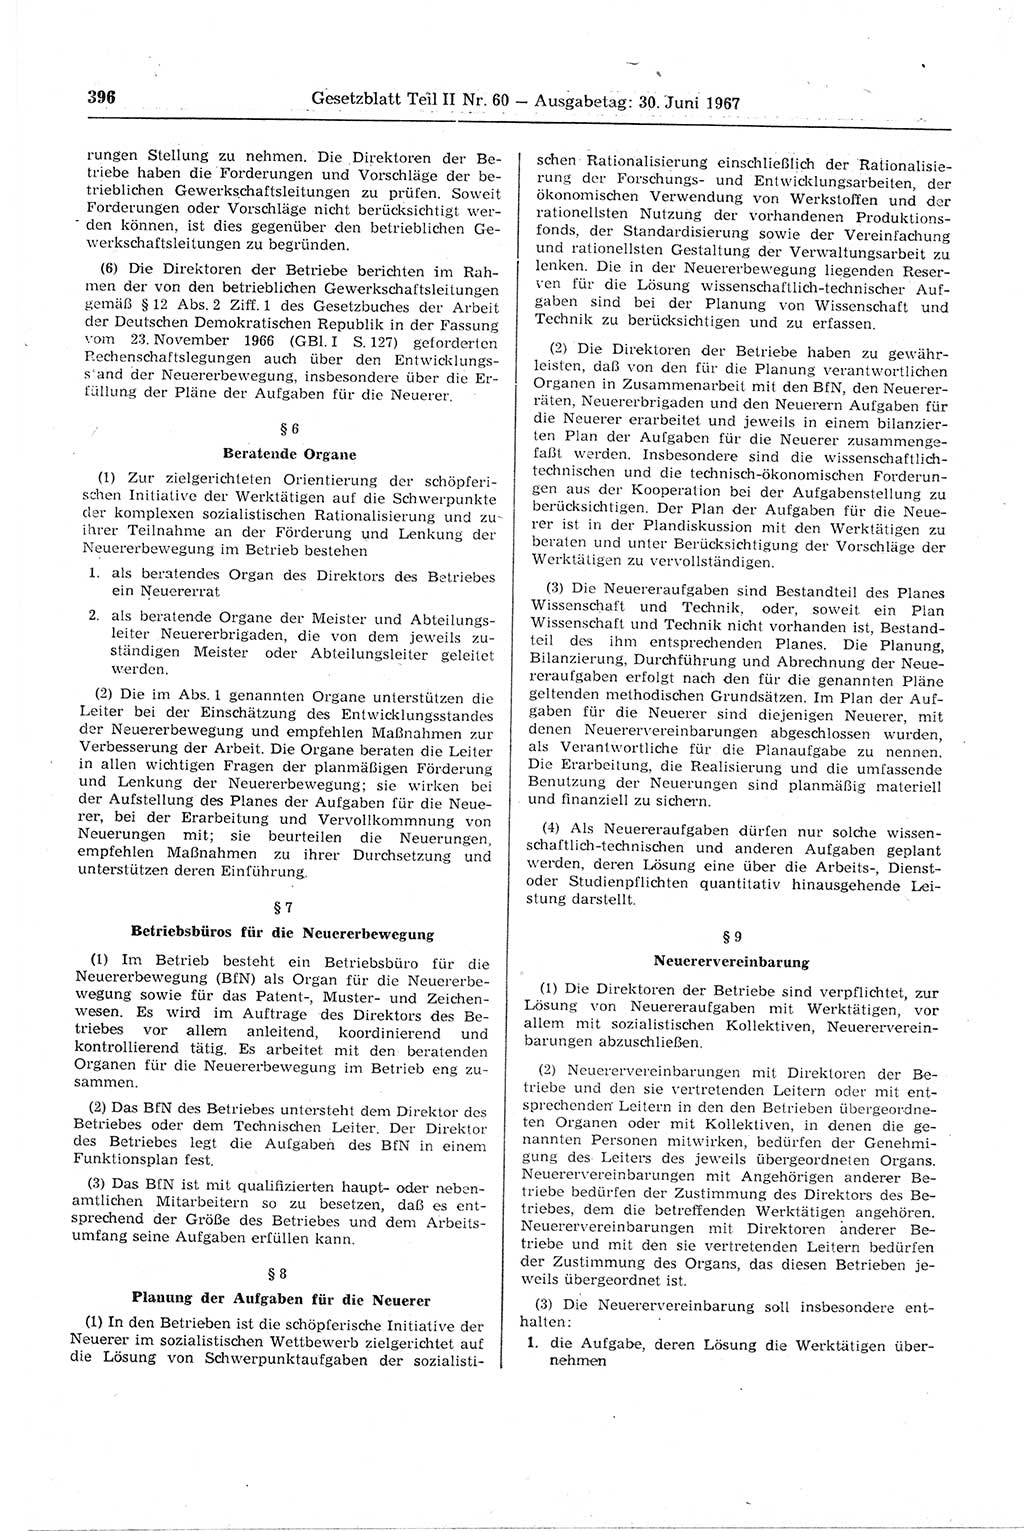 Gesetzblatt (GBl.) der Deutschen Demokratischen Republik (DDR) Teil ⅠⅠ 1967, Seite 396 (GBl. DDR ⅠⅠ 1967, S. 396)